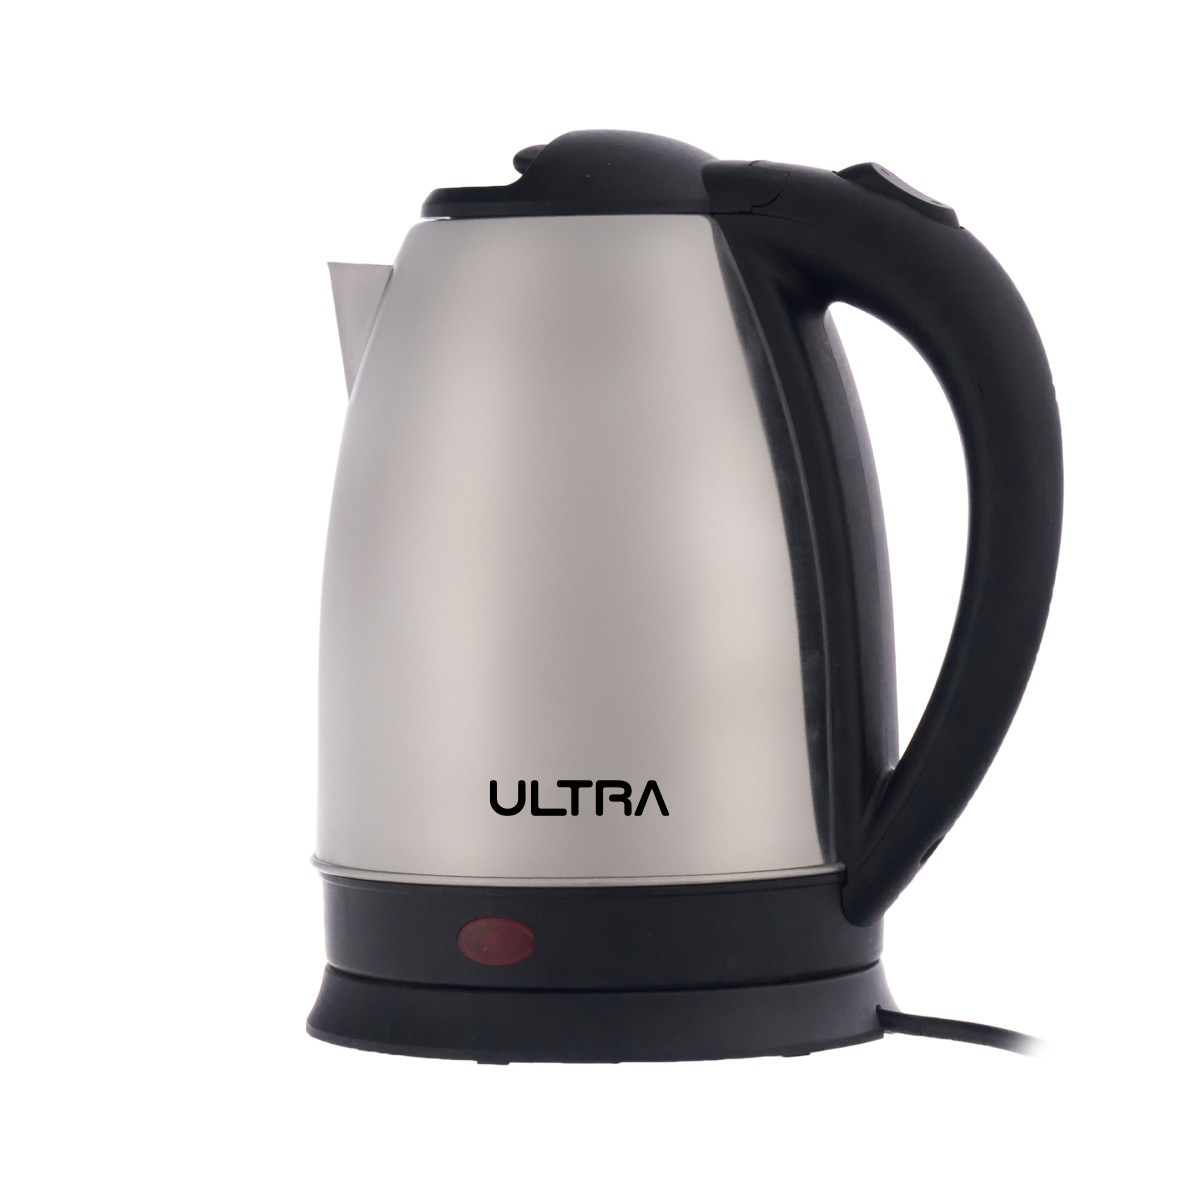 Ultra Electric Kettle, 2 Liters, 1500 Watt, Black and Stainless Steel - UKS15EE1